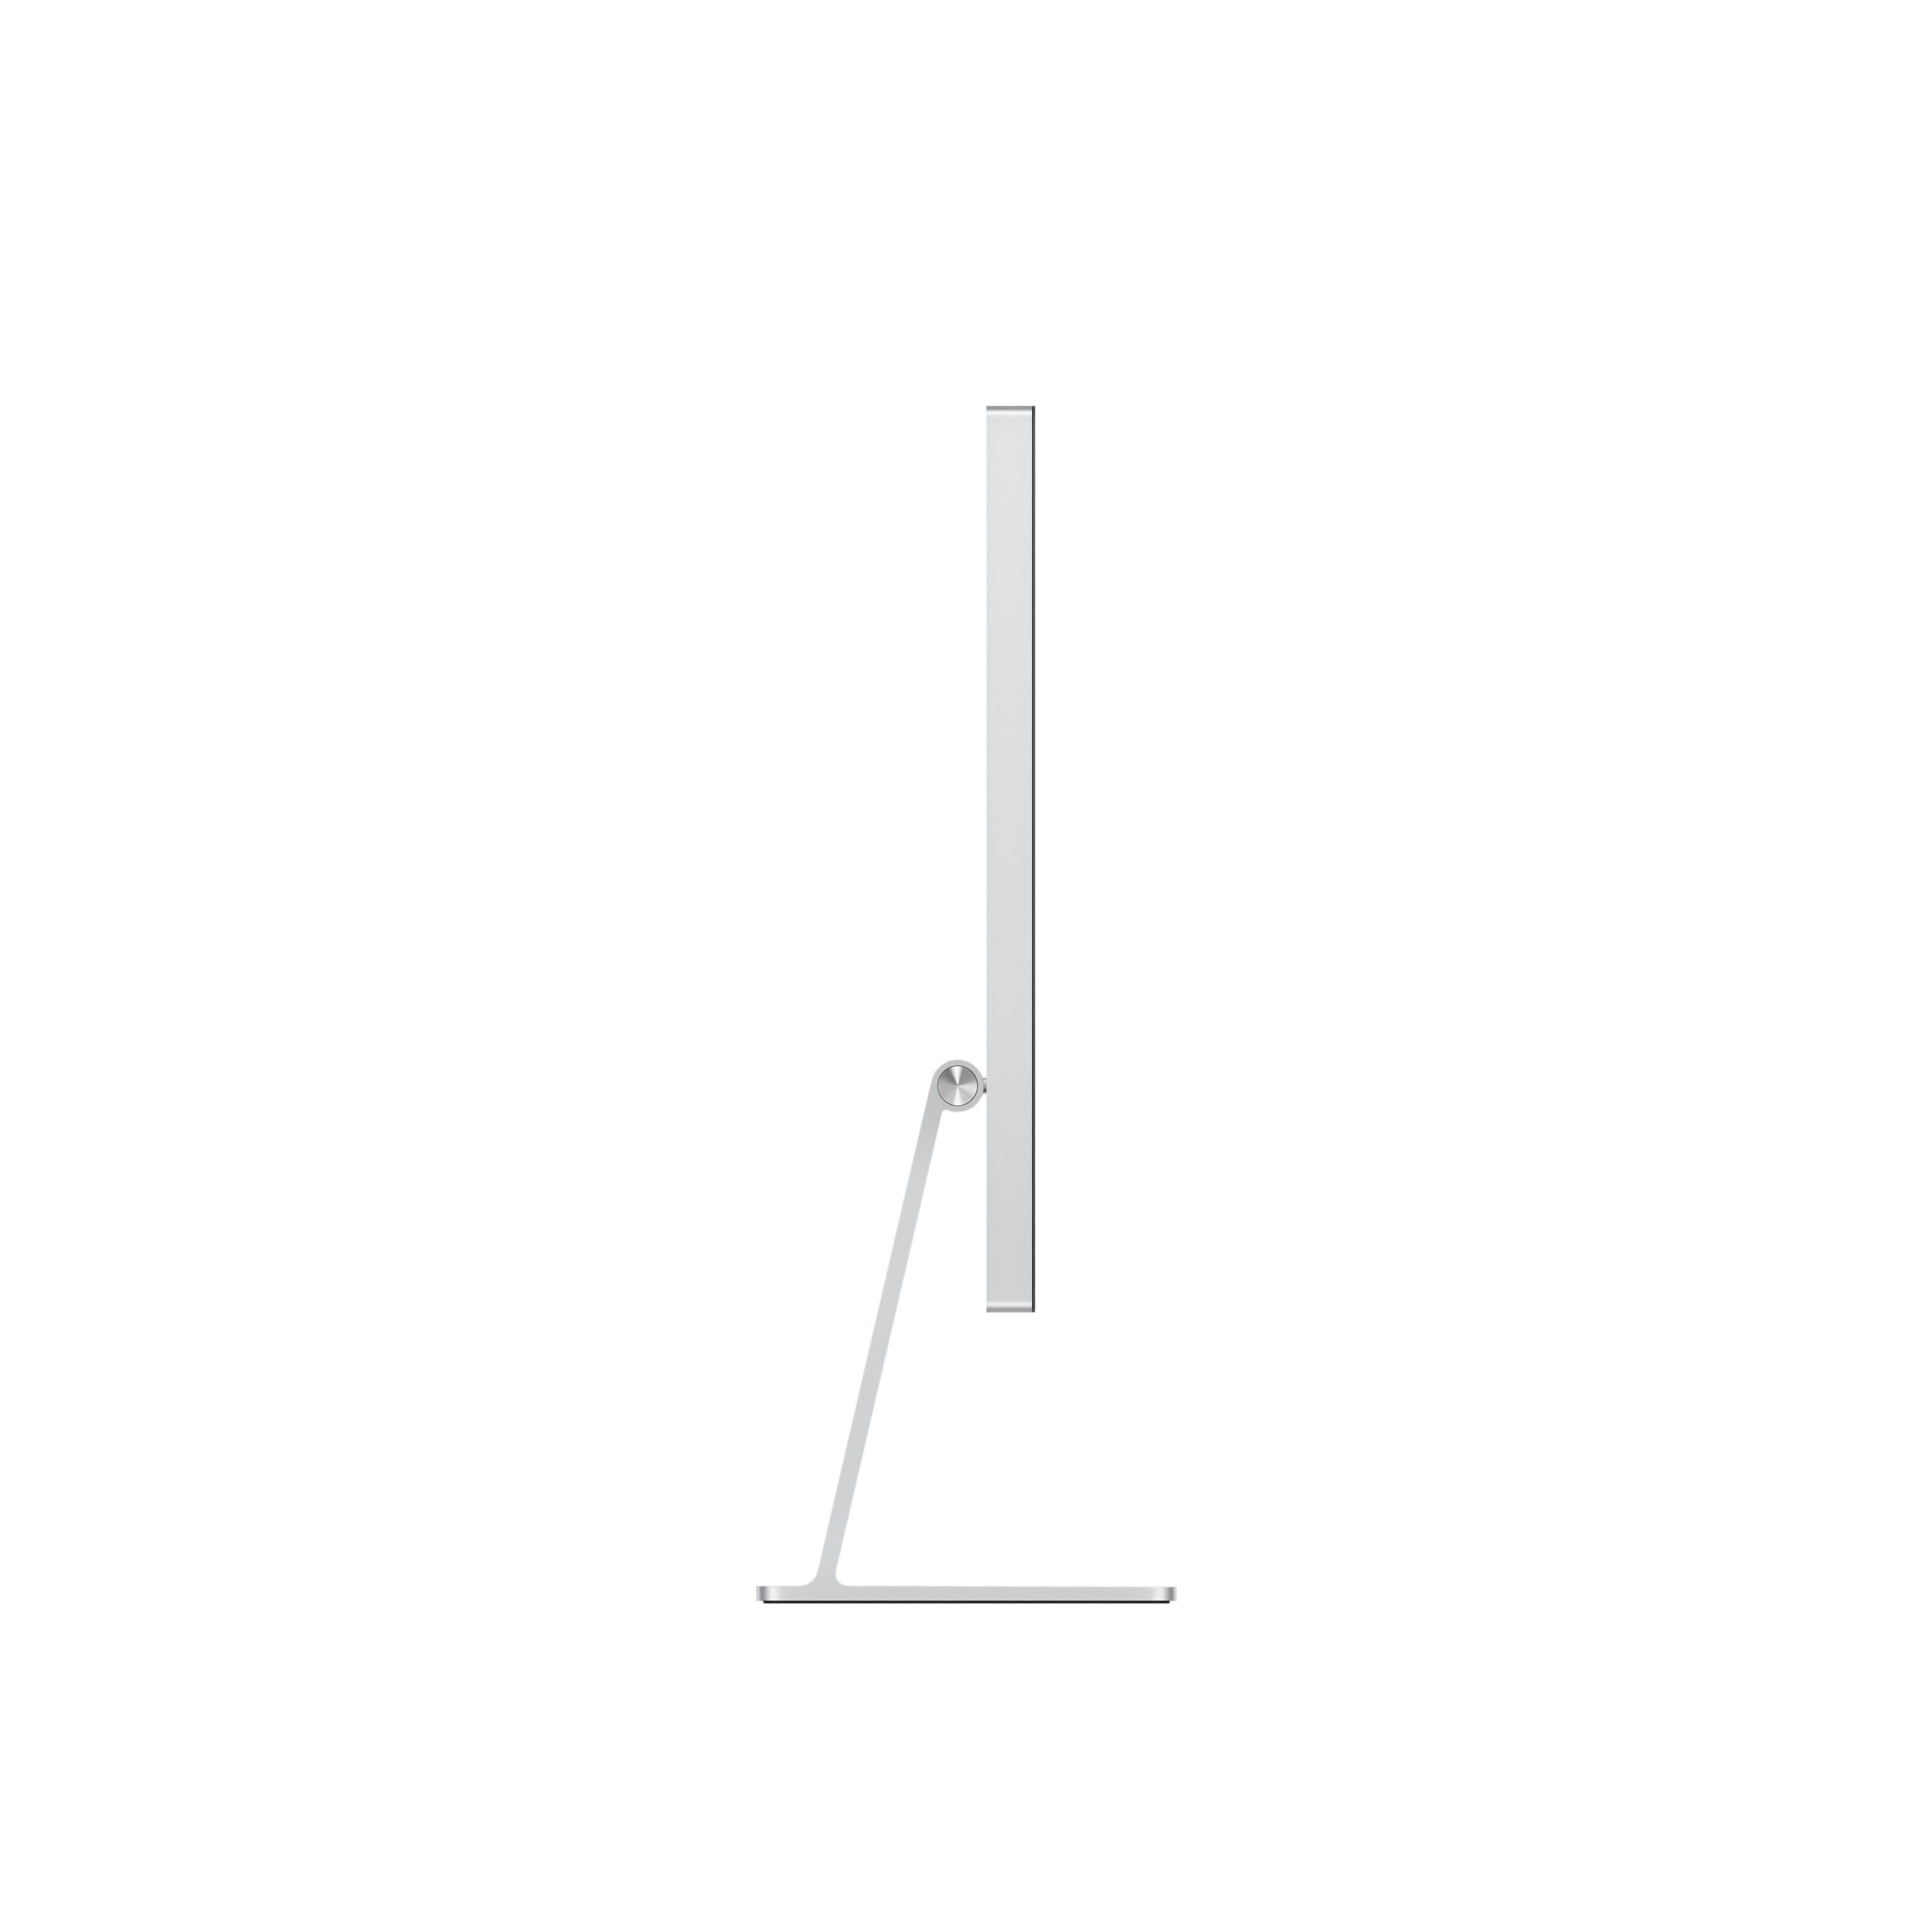 Apple Studio Display - Nano-Texture Glass - Tilt and Height Adjustable Stand